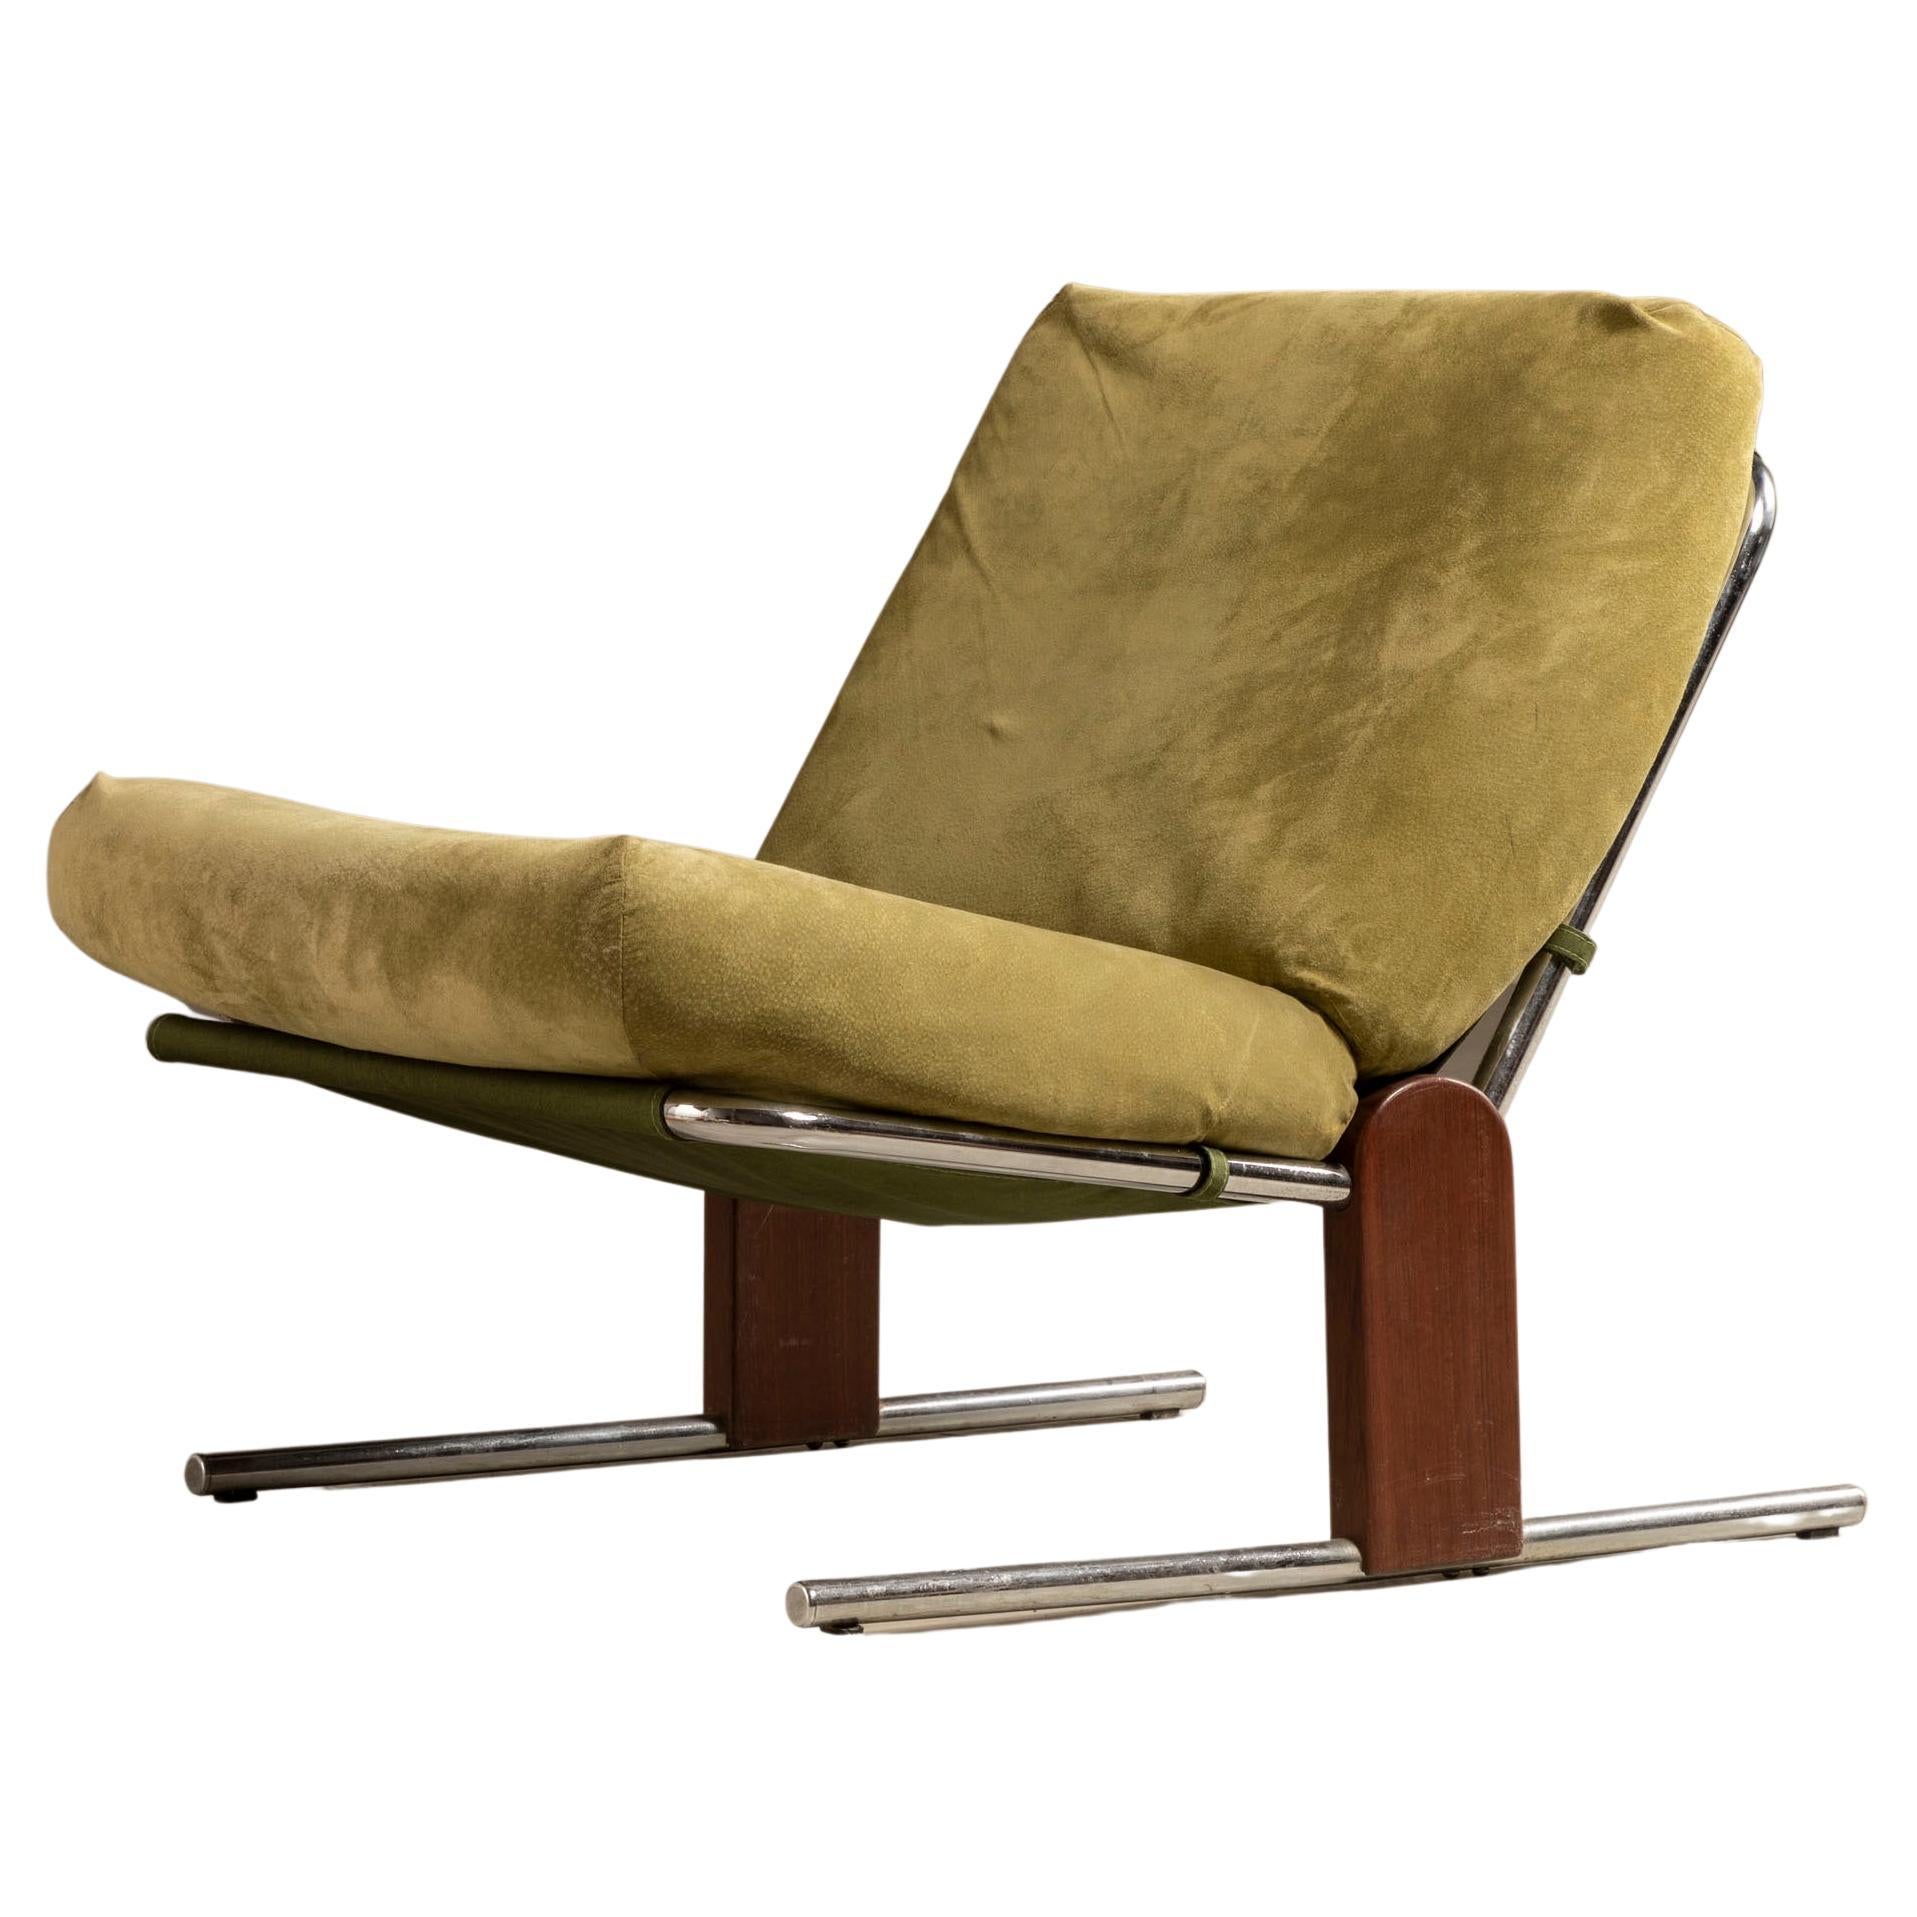 Paire de fauteuils de salon Contempo, par Percival Lafer, brésilien moderne du milieu du siècle dernier